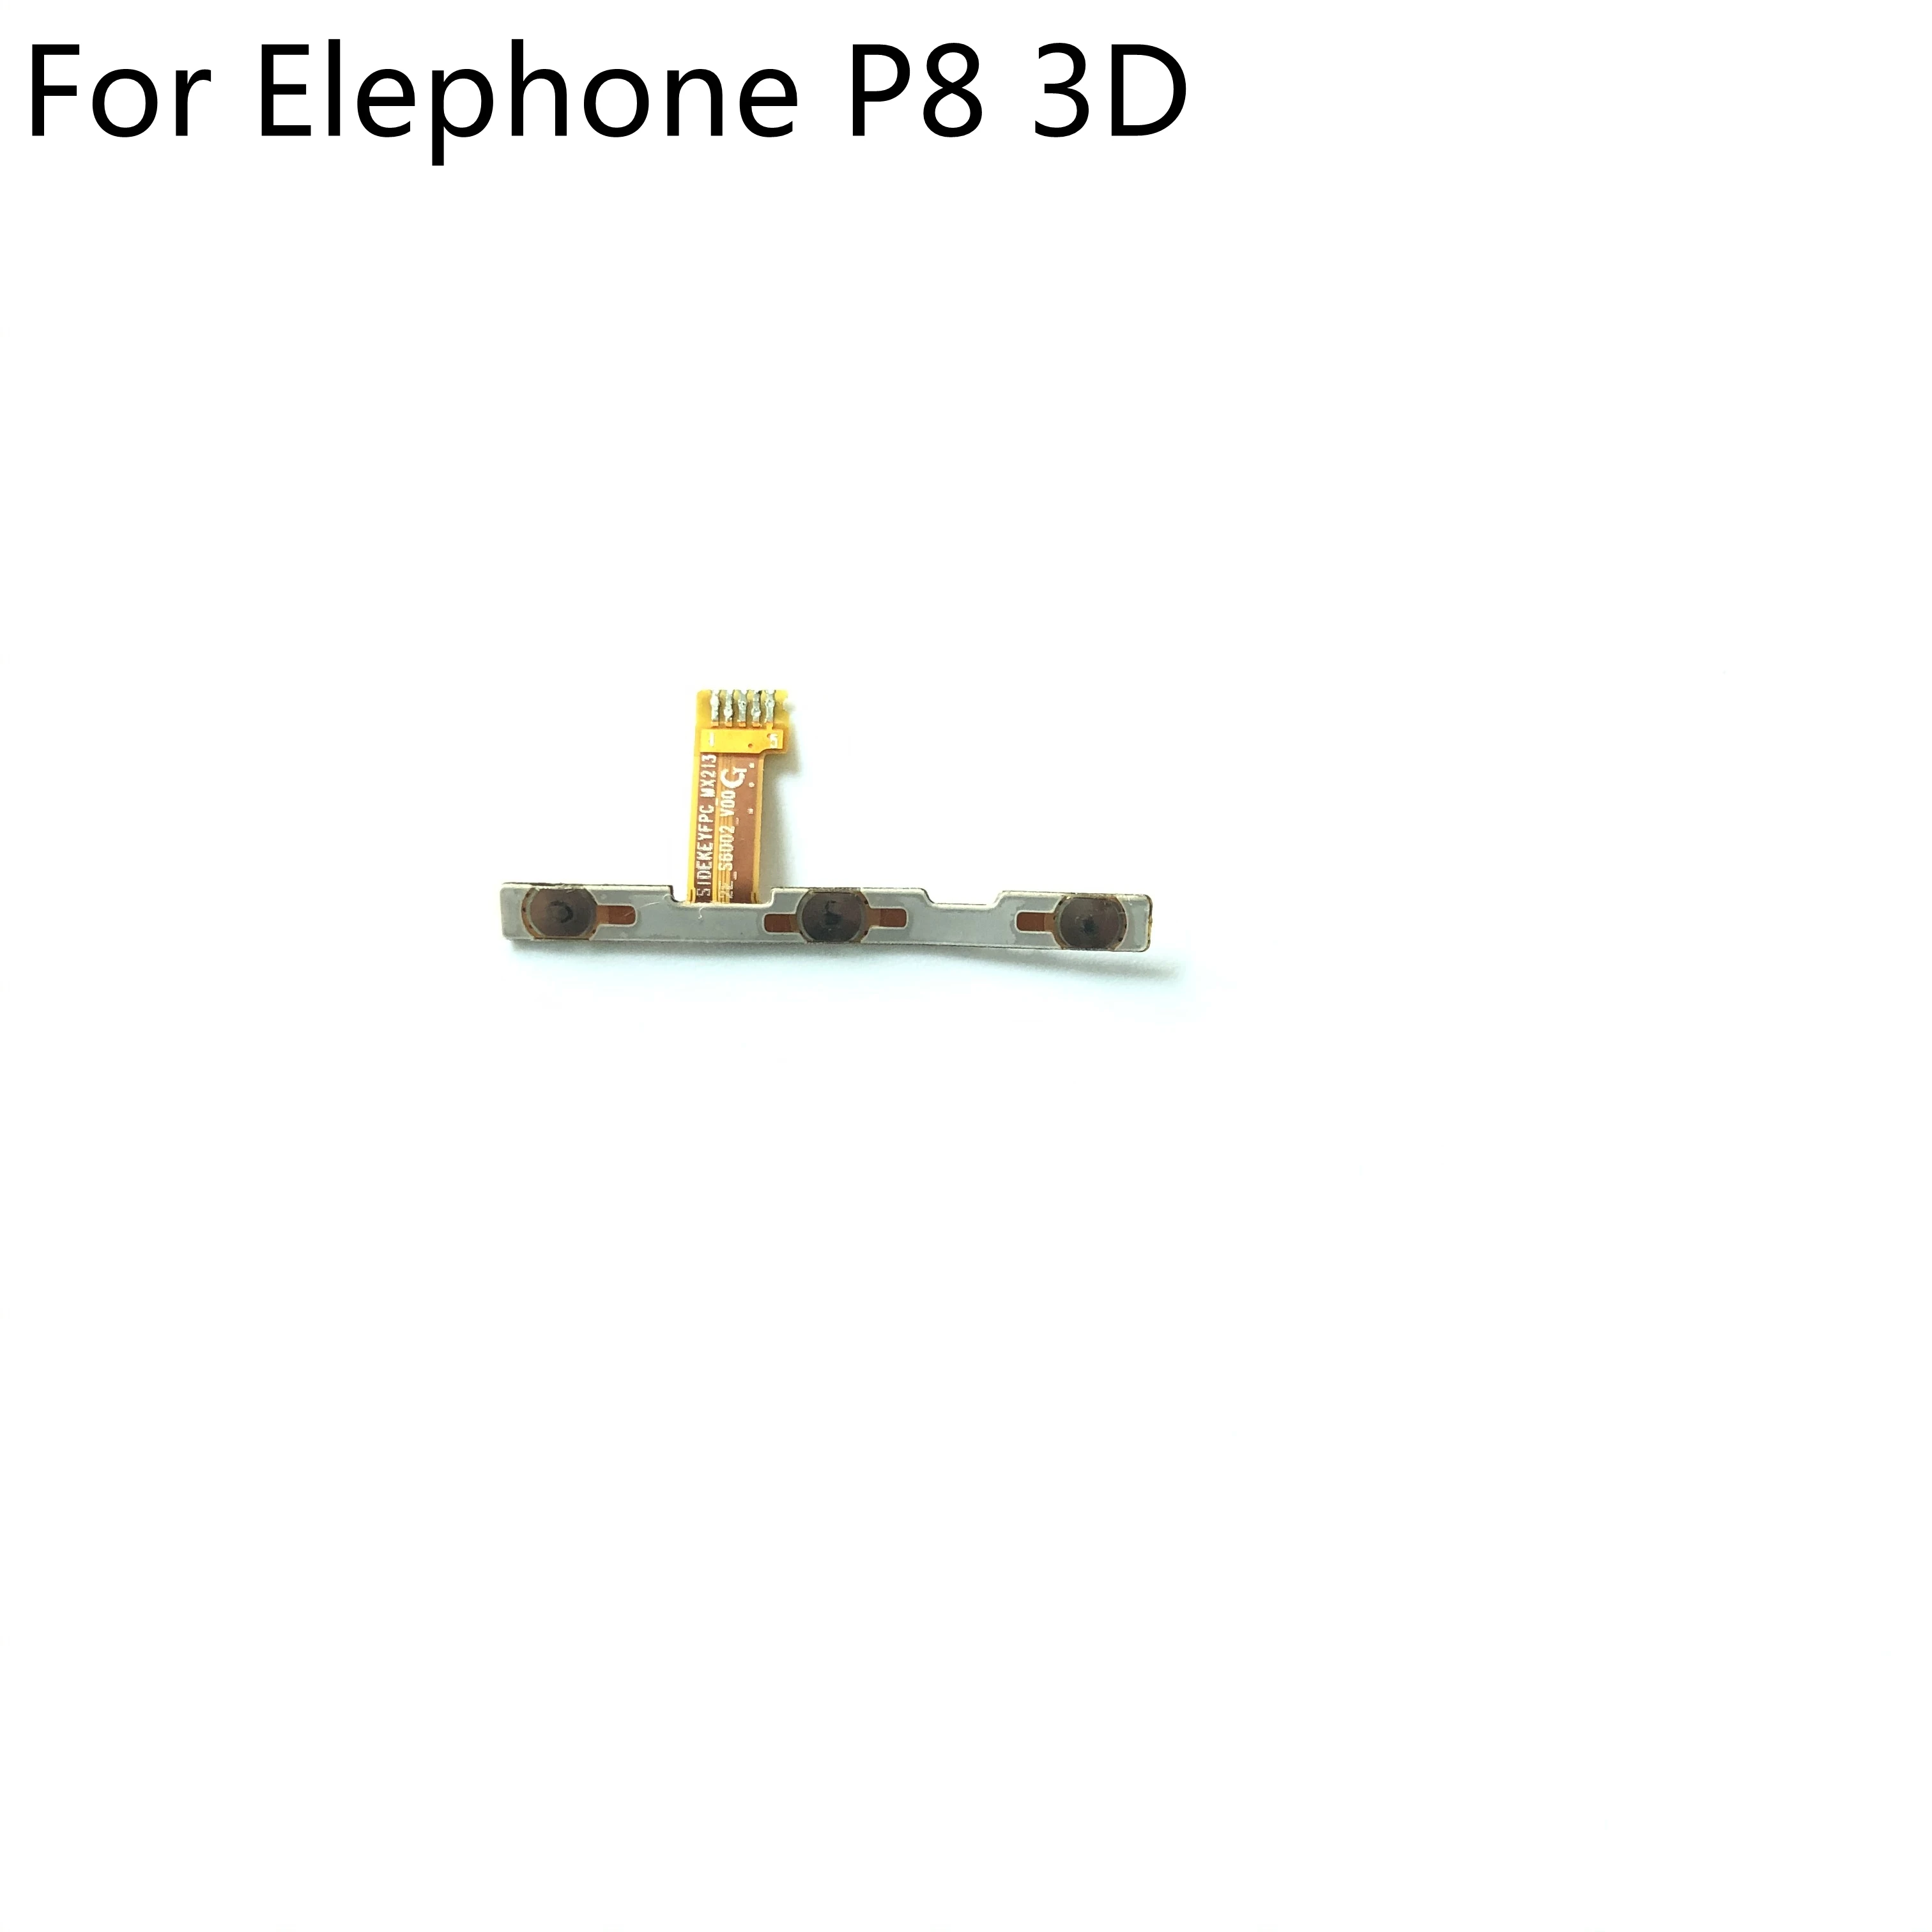 Кнопка питания и громкости. Купить шлейф для кнопки запуска смартфон Elephone p9000.